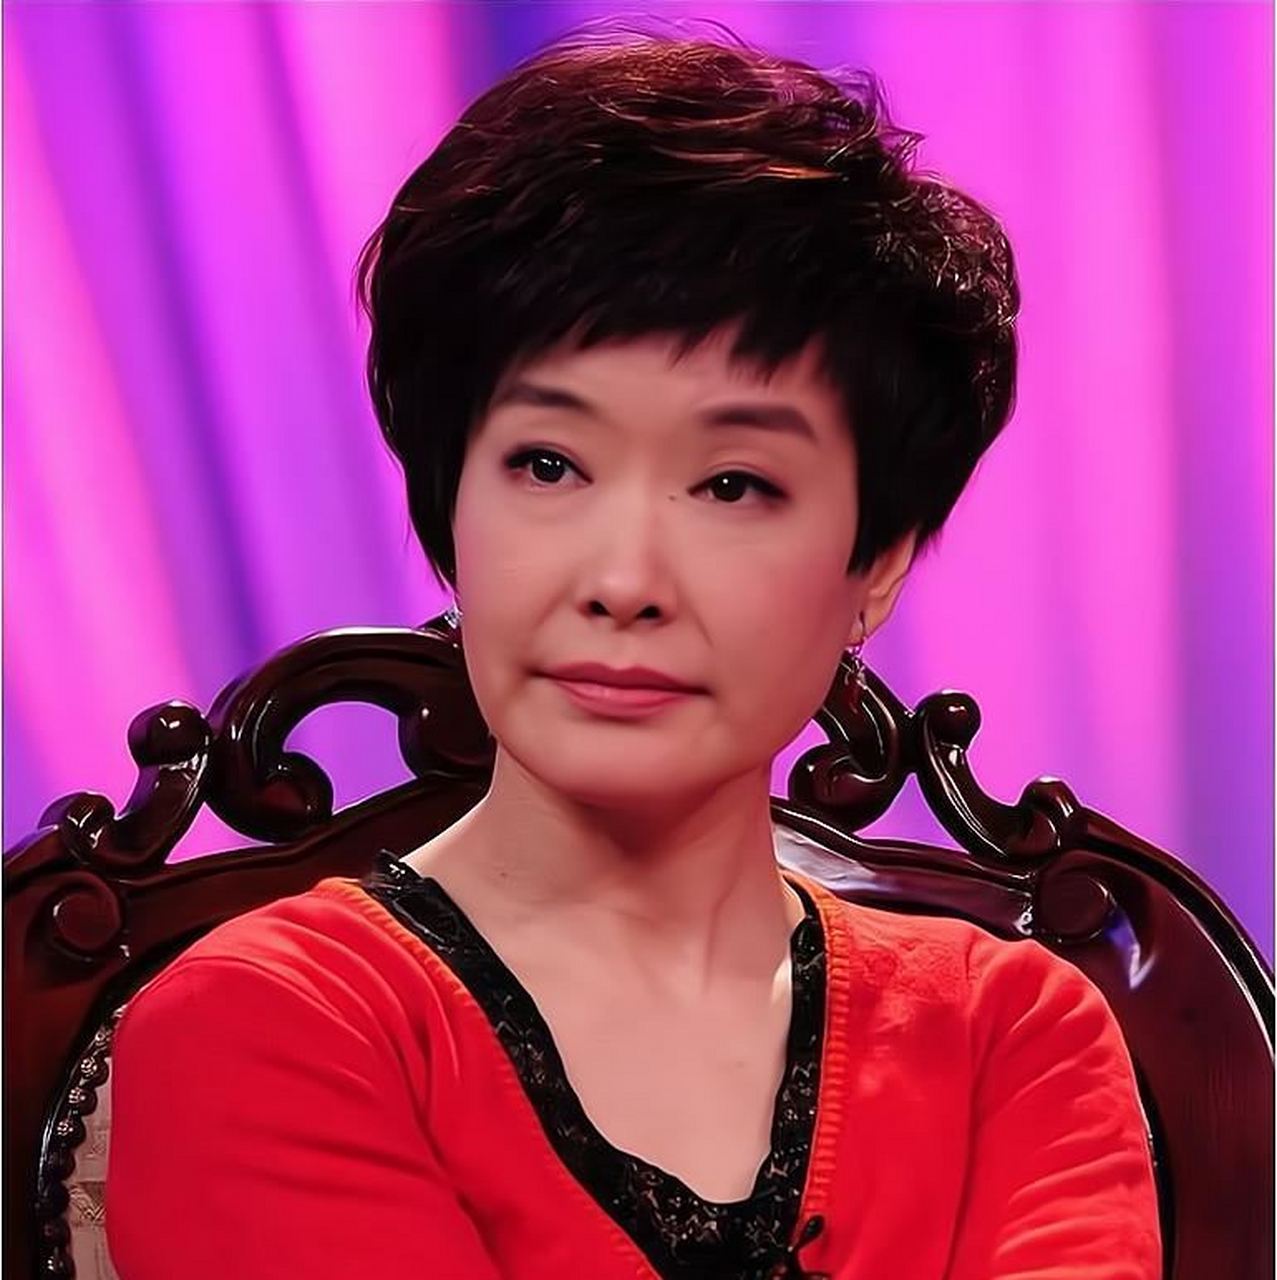 王雪纯是央视《正大综艺》主持人,她从小家庭优越,性格知性大方